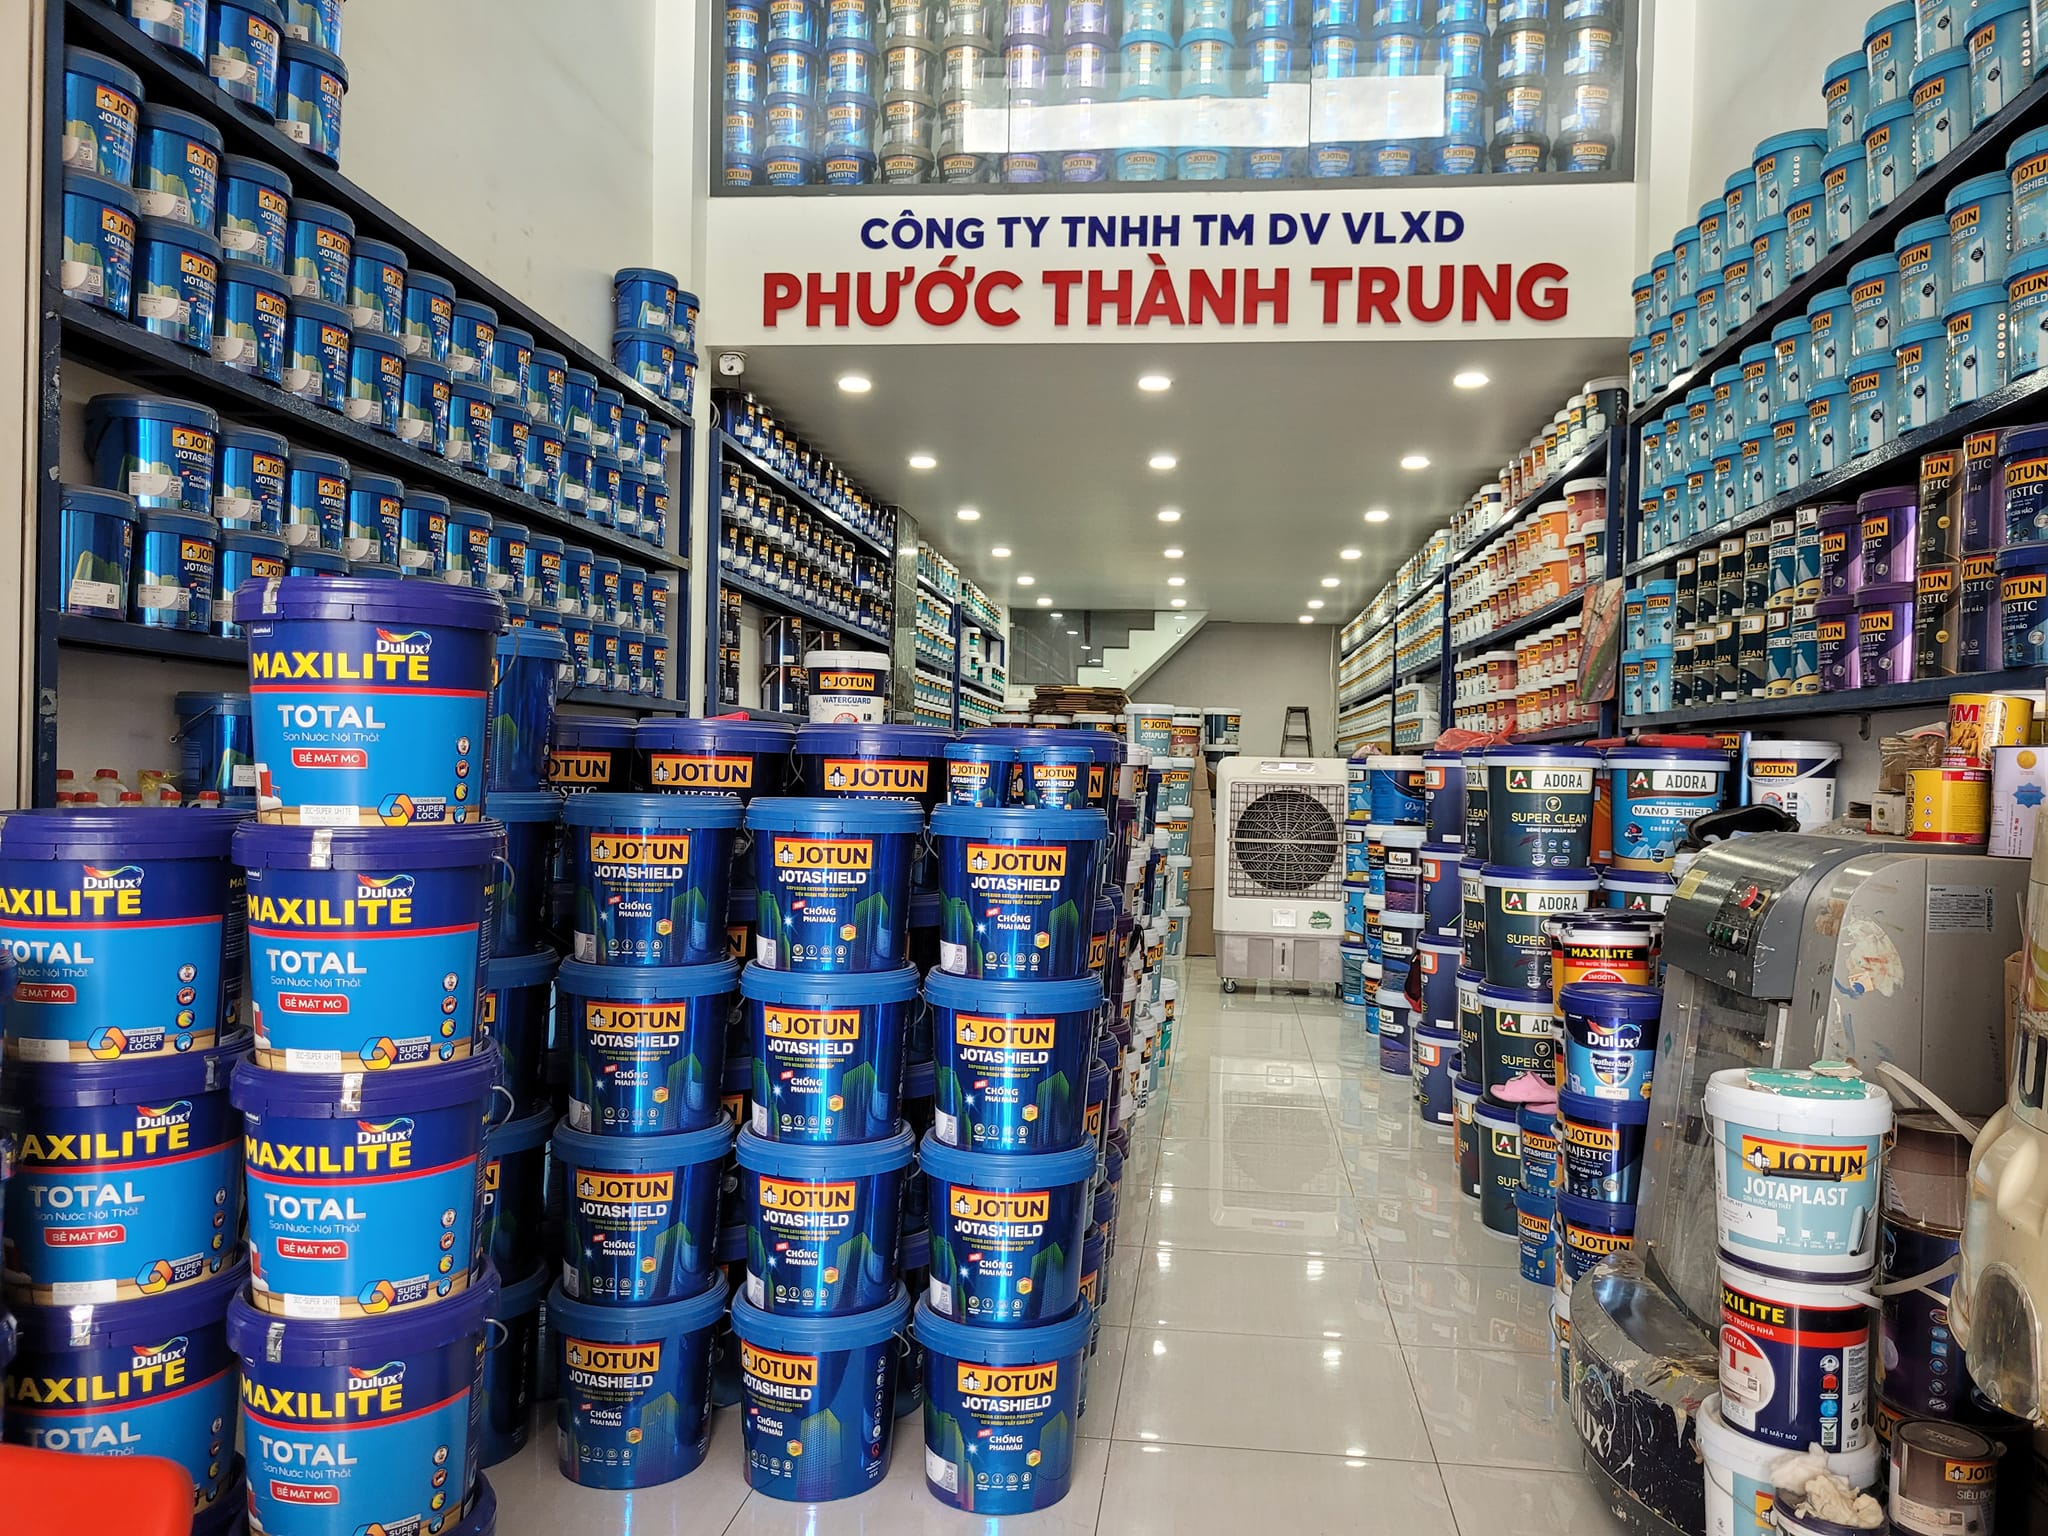 Đại lý sơn nước phân phối uy tín nhất quận Bình Tân, TP.HCM